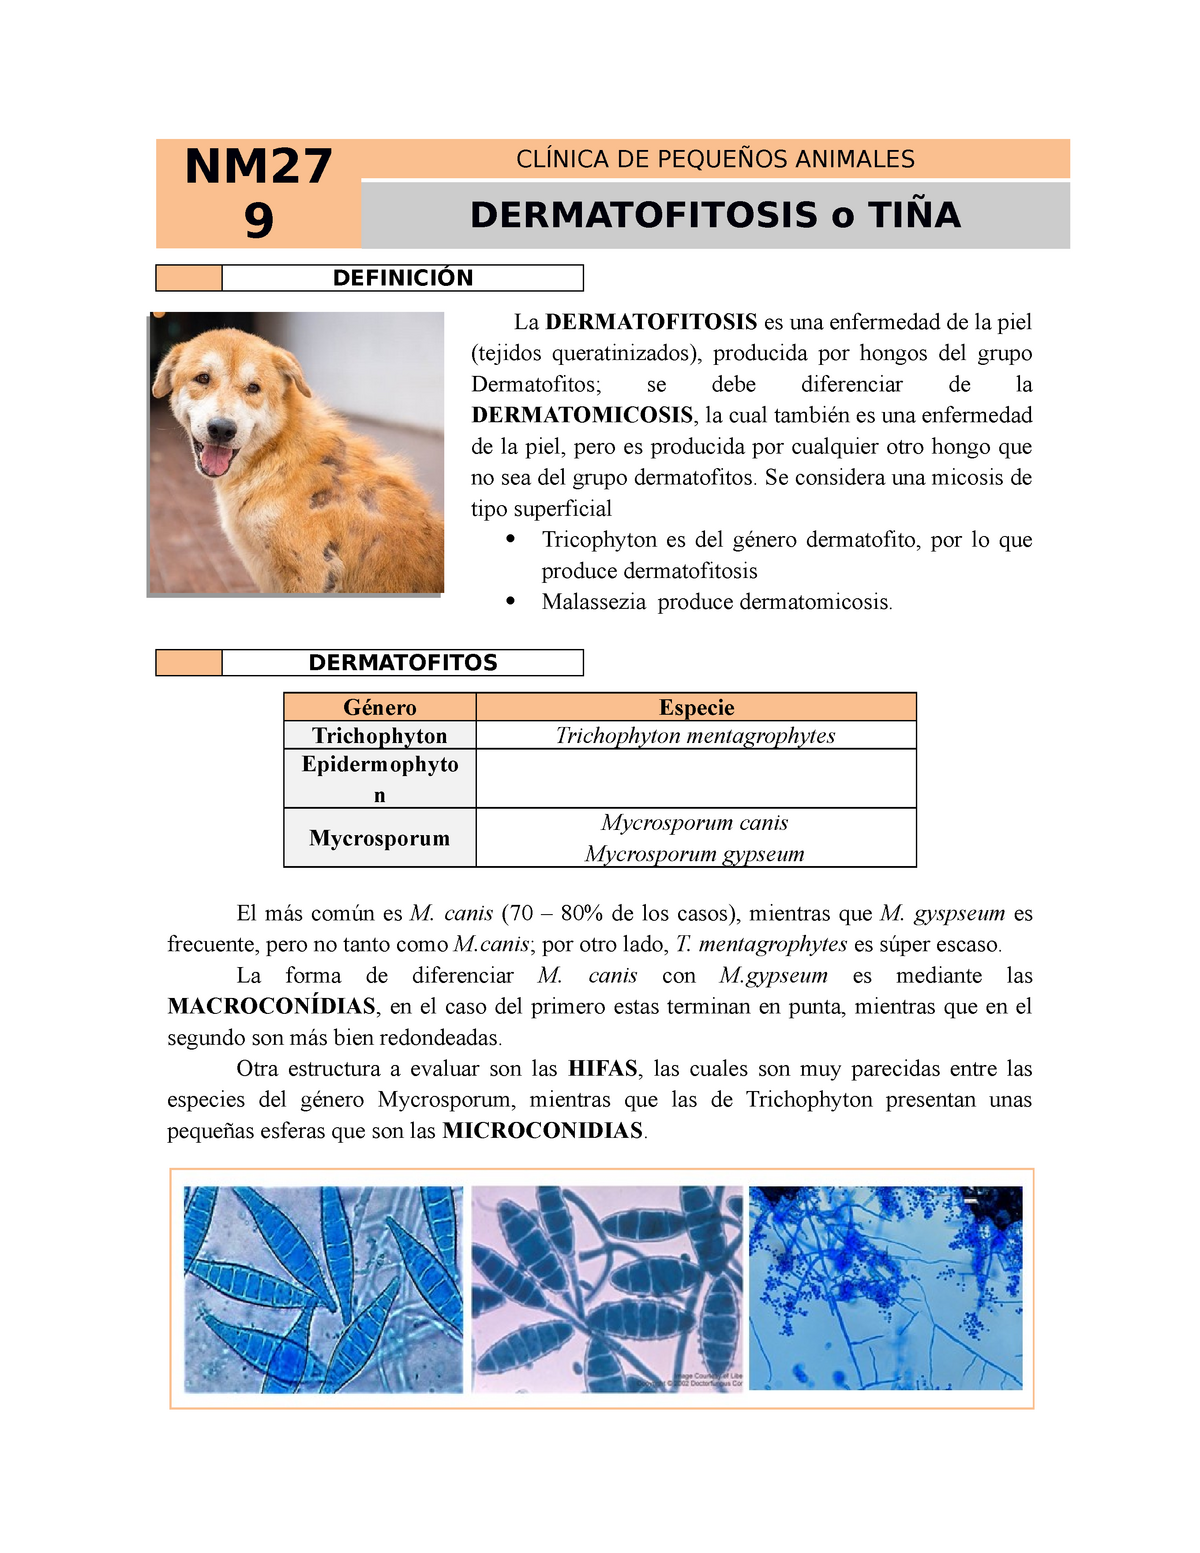 Diagnóstico de la dermatofitosis - Ateuves, para el auxiliar veterinario